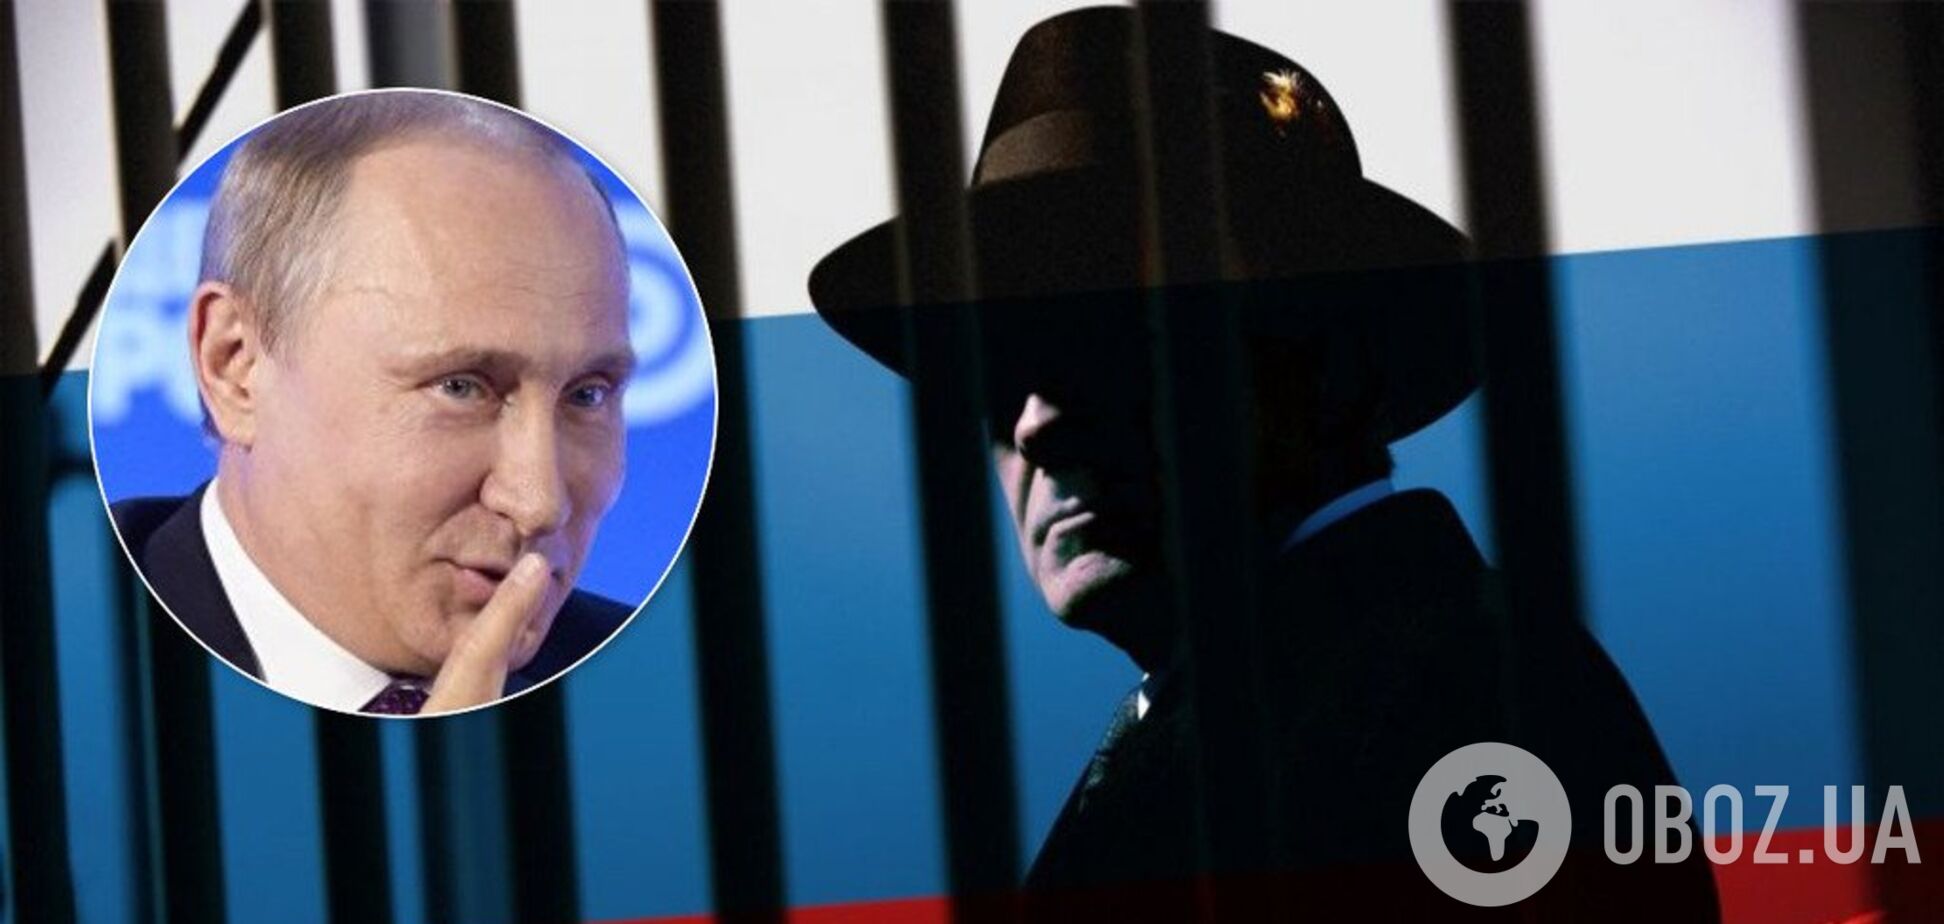 Германия со скандалом высылает из страны российских 'шпионов': в РФ разразились угрозами